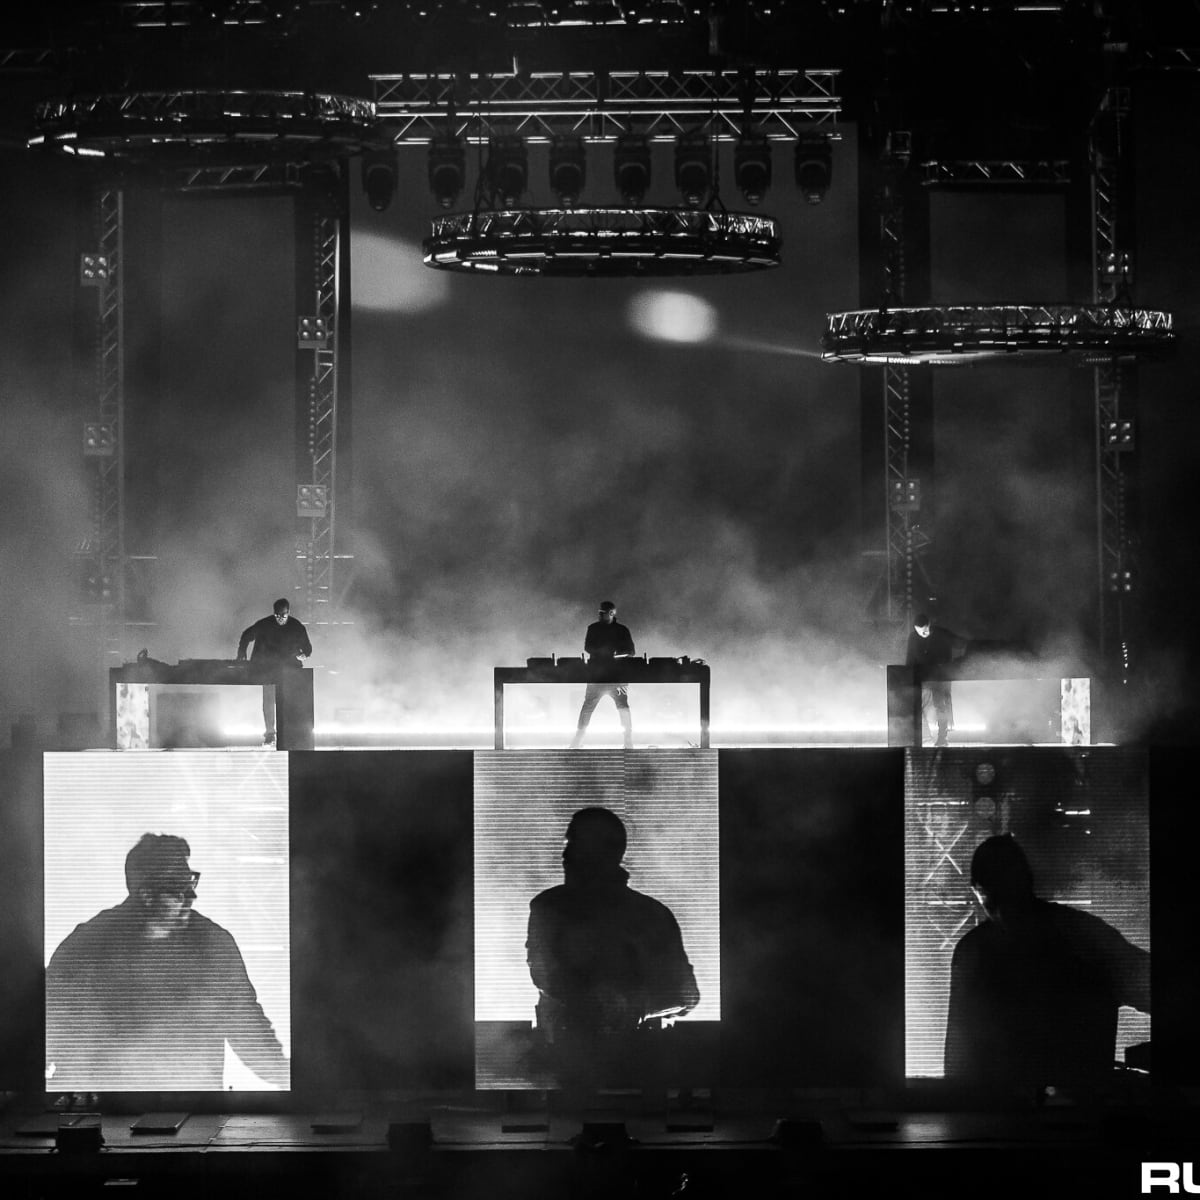 Swedish House Mafia Shares 'Paradise Again: The Live Album